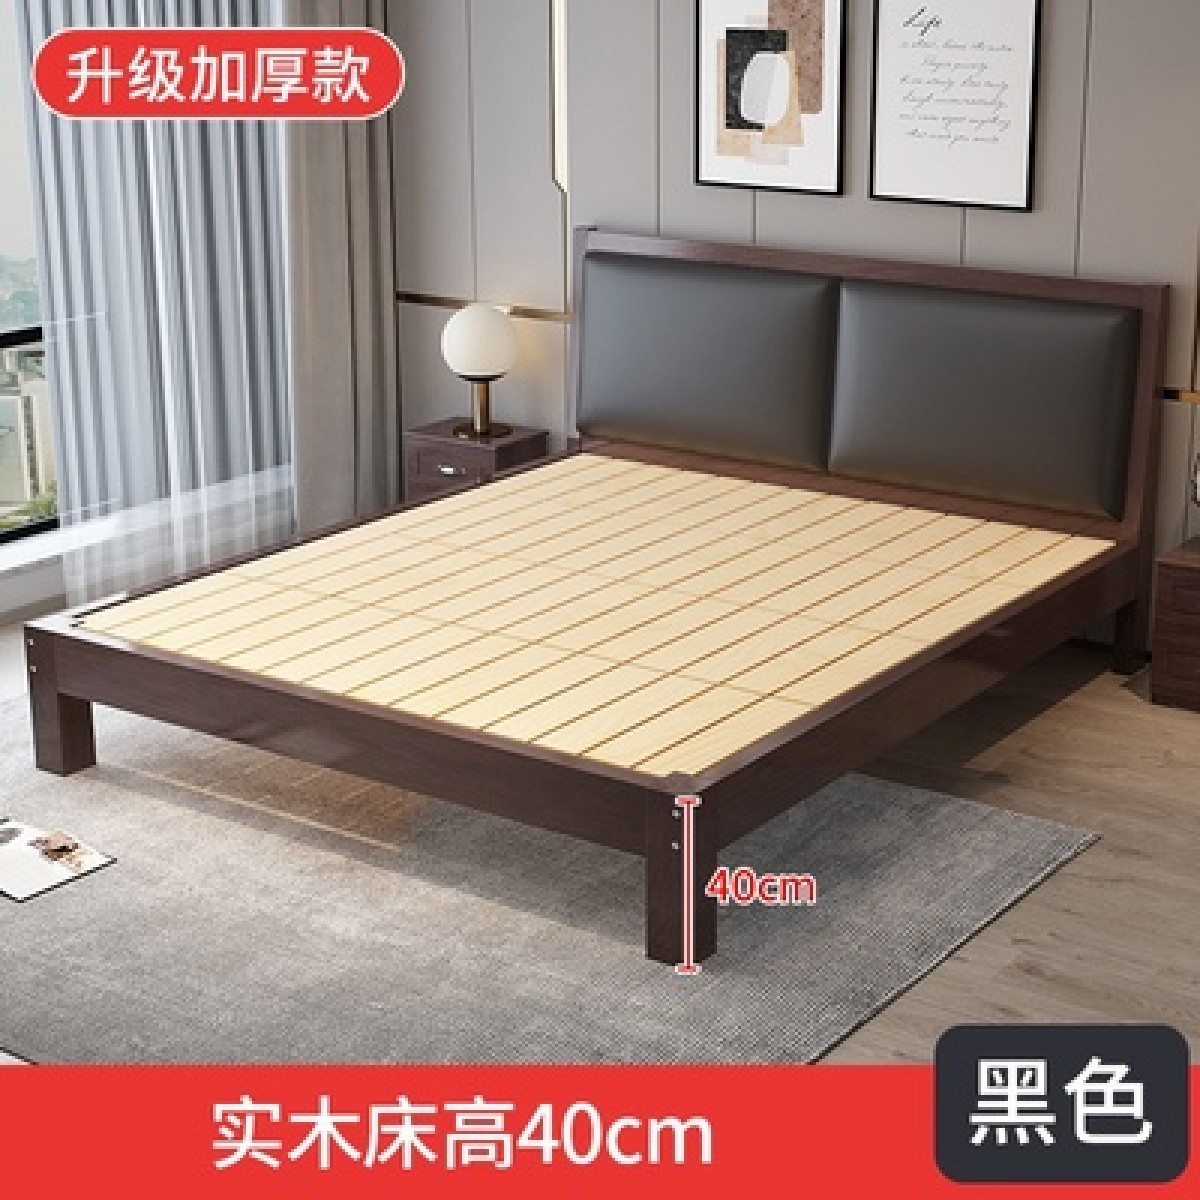 简易出租双人床简约松木1.2b米床架经济木床房单人床1.8m实现代型